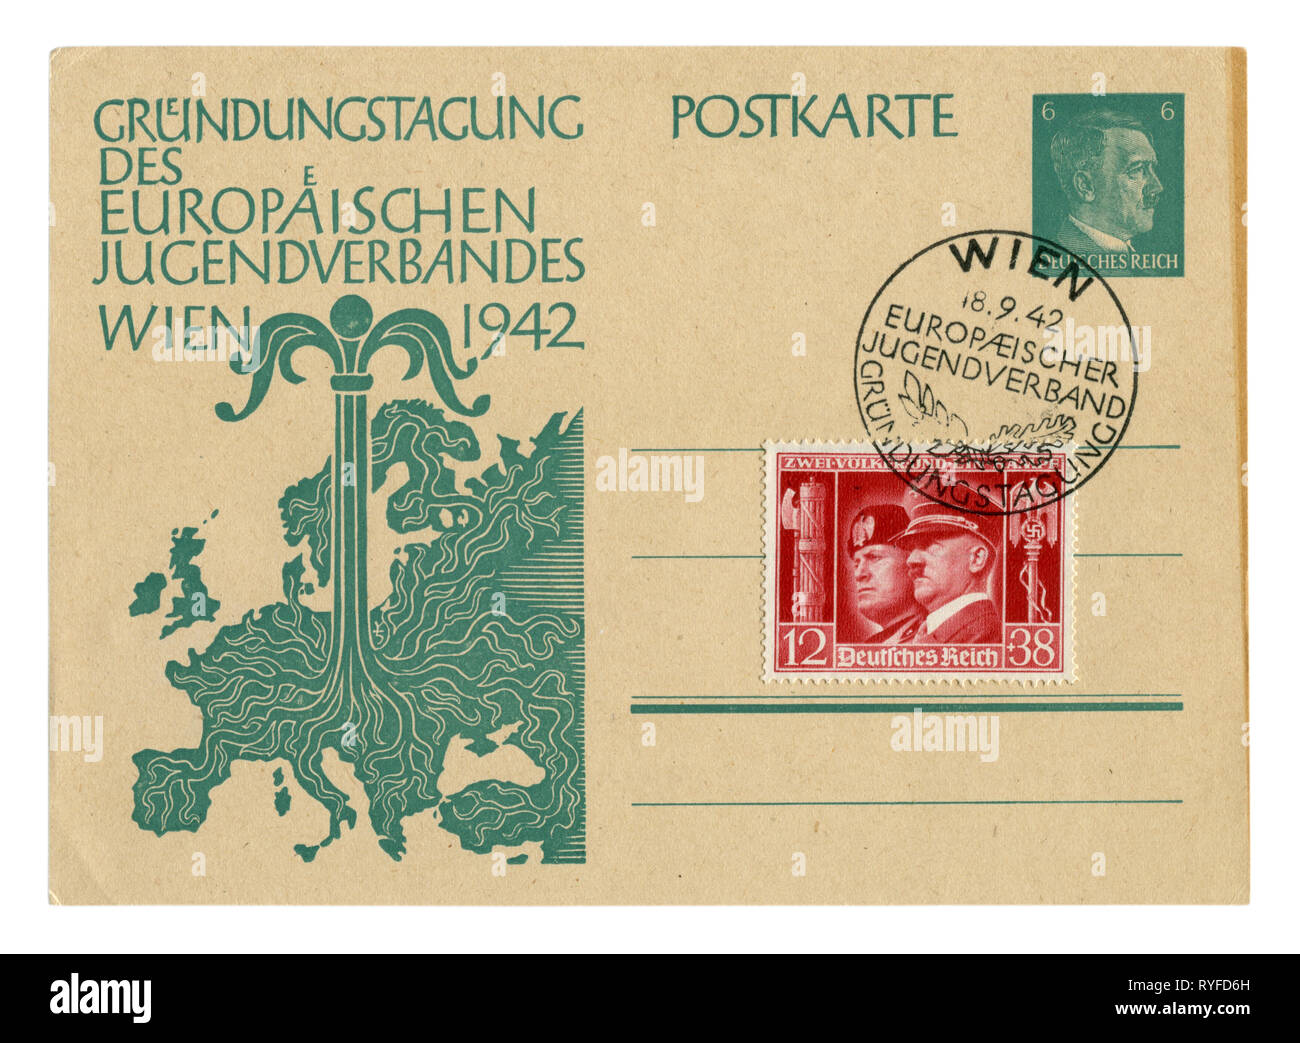 Carte postale historique allemand : Jour de fondation de l'organisation de jeunesse. Les jeunes de plus en plus d'arbres du centre de la carte de l'Europe. L'Allemagne, Banque D'Images